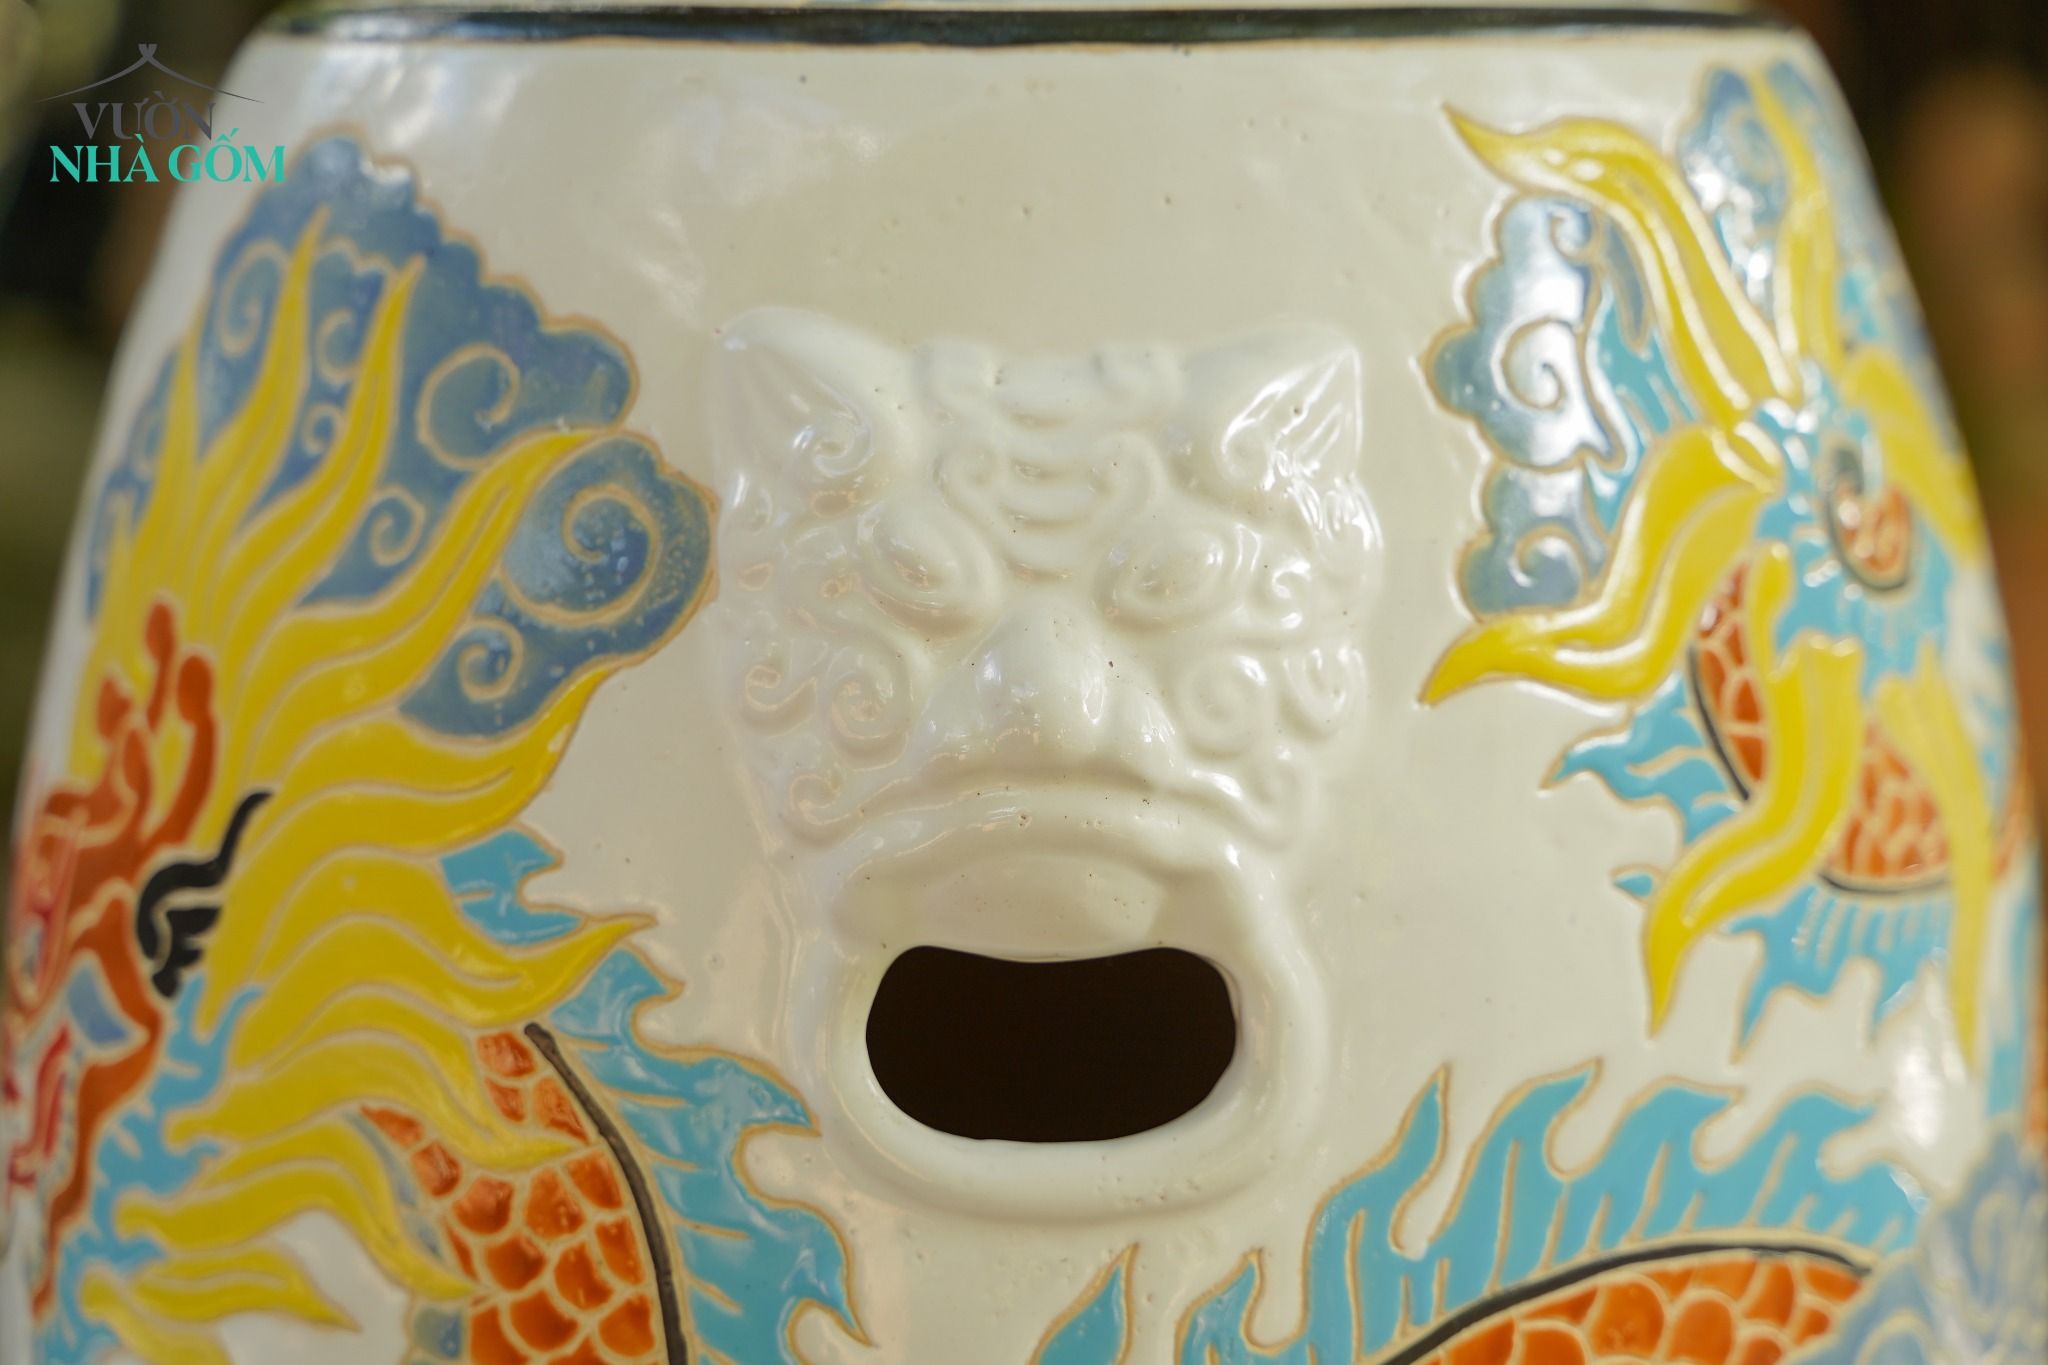  Đôn trống Song Long Tranh Châu tay cầm hình khối, màu trắng, gốm mỹ nghệ Nam Bộ, C45 x R35cm 